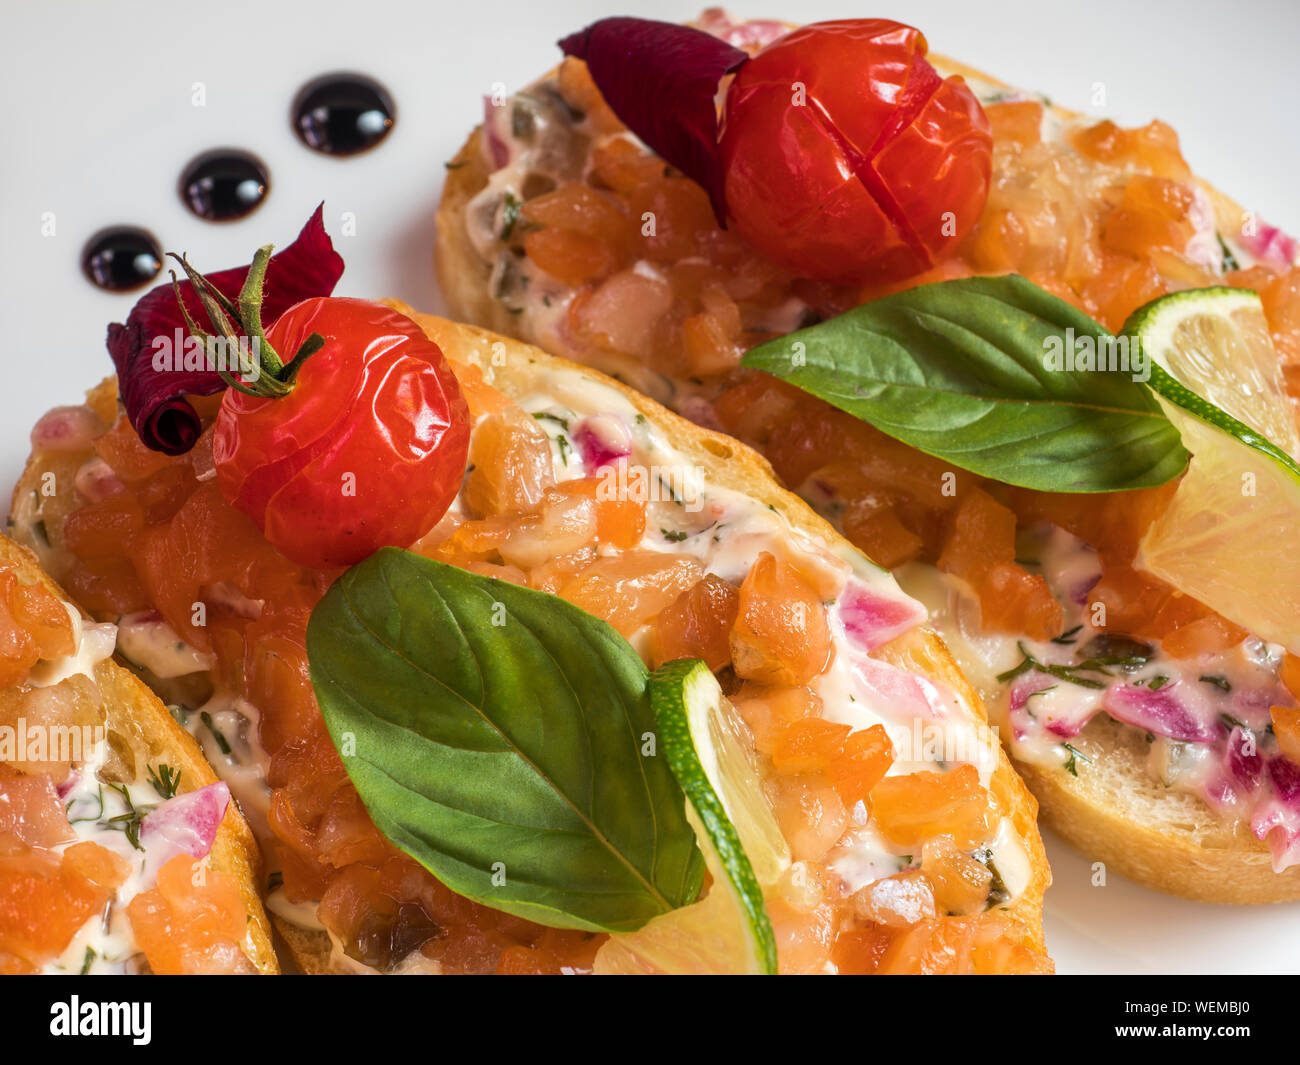 Bruschetta con queso crema y salazones de pescado cocido con tomate y albahaca Foto de stock